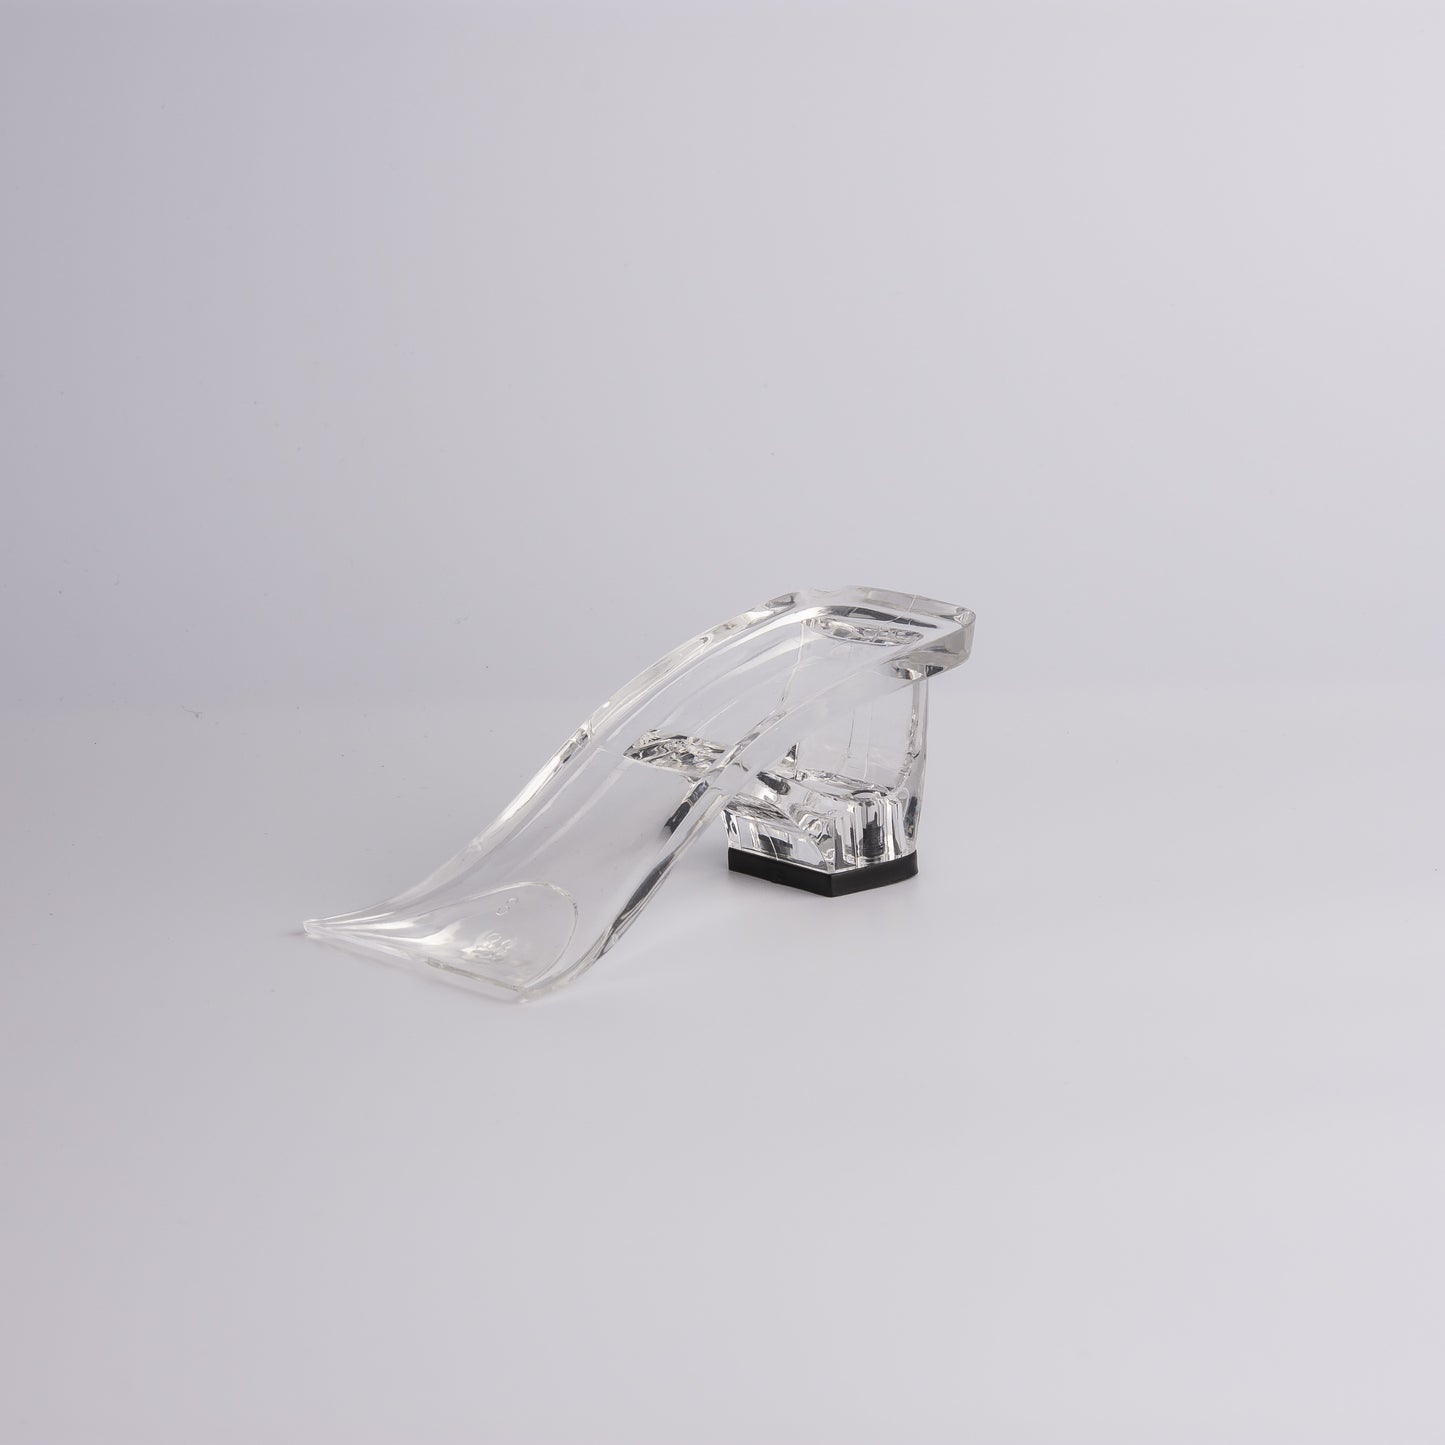 
                  
                    Acrylic shoe sole
                  
                